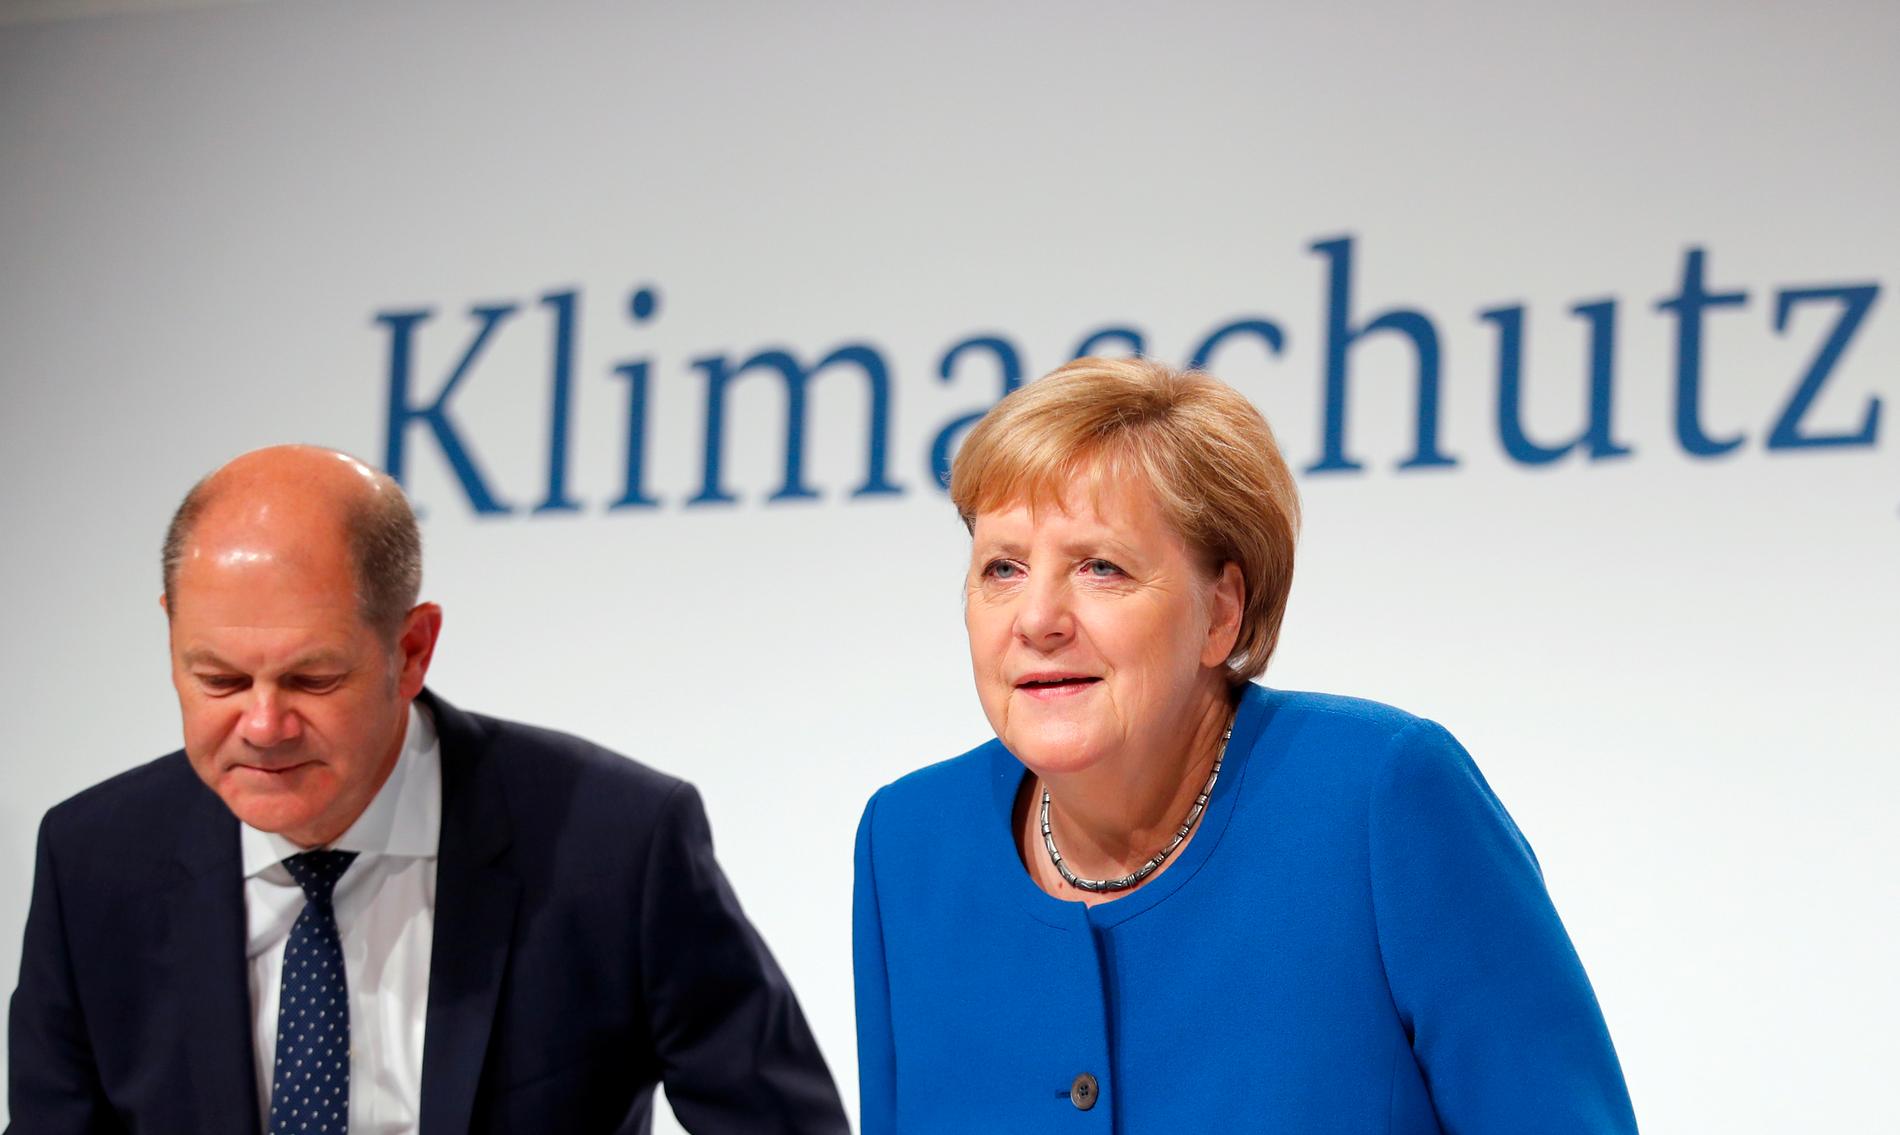 Tysklands förbundskansler Angela Merkel (CDU) och finansminister Olaf Scholz (SPD) presenterar långsiktiga tyska klimatsatsningar.